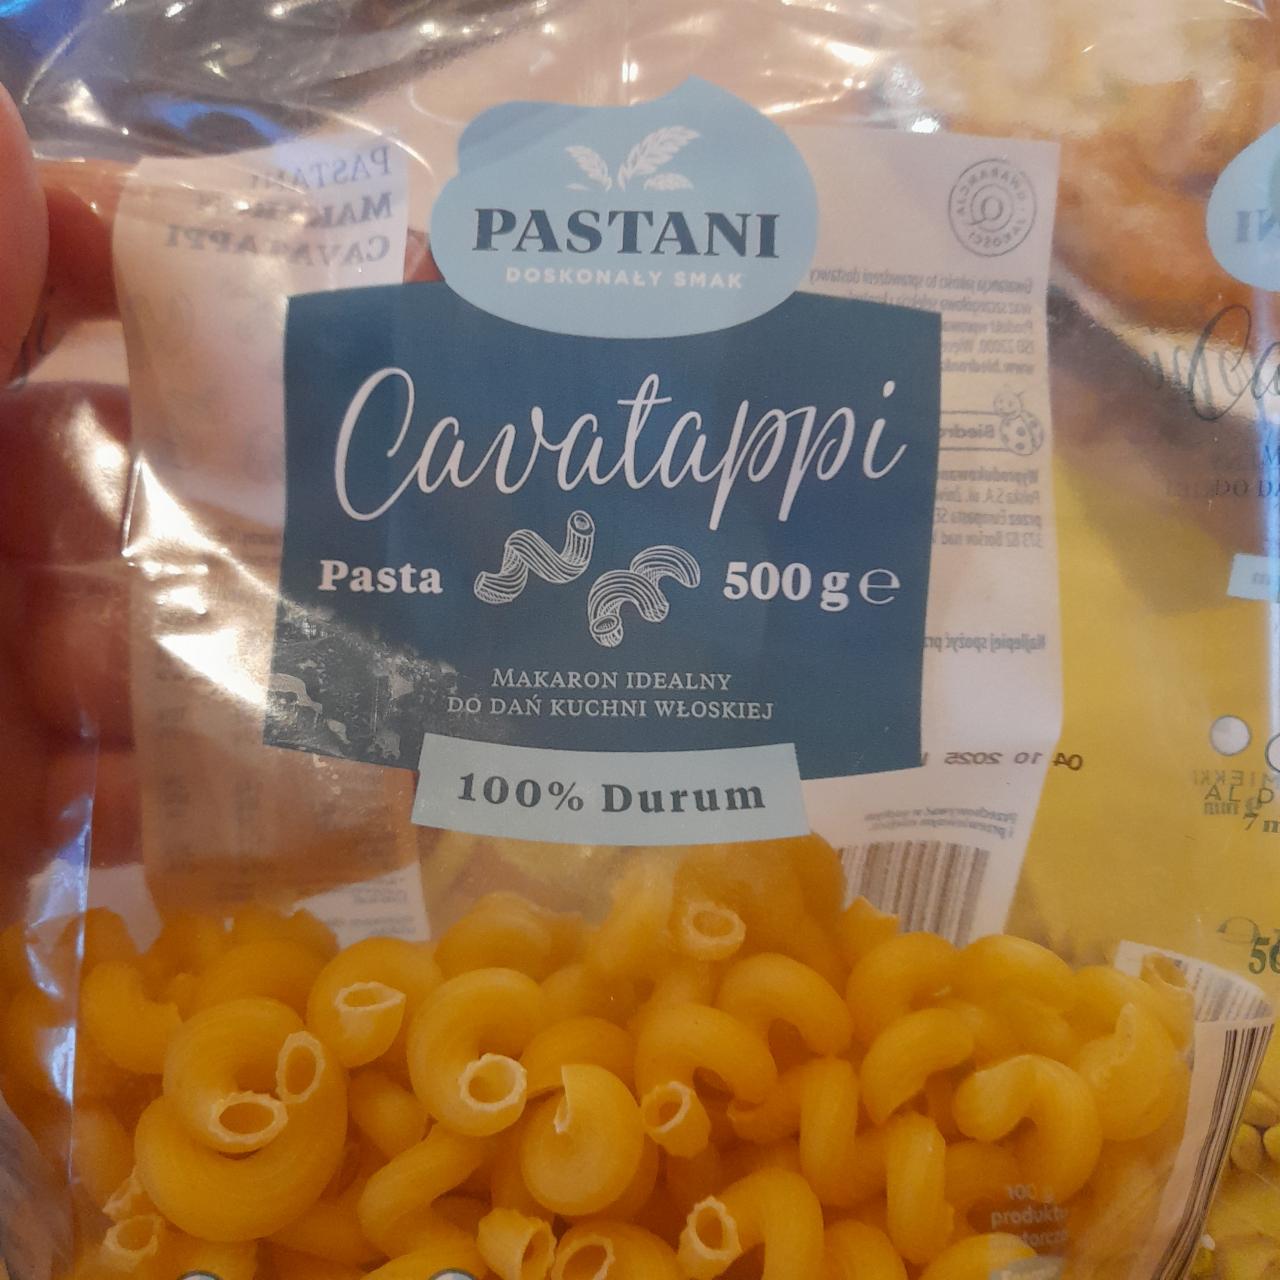 Фото - Макароны Pasta 100% Durum Pastani Cavatappi